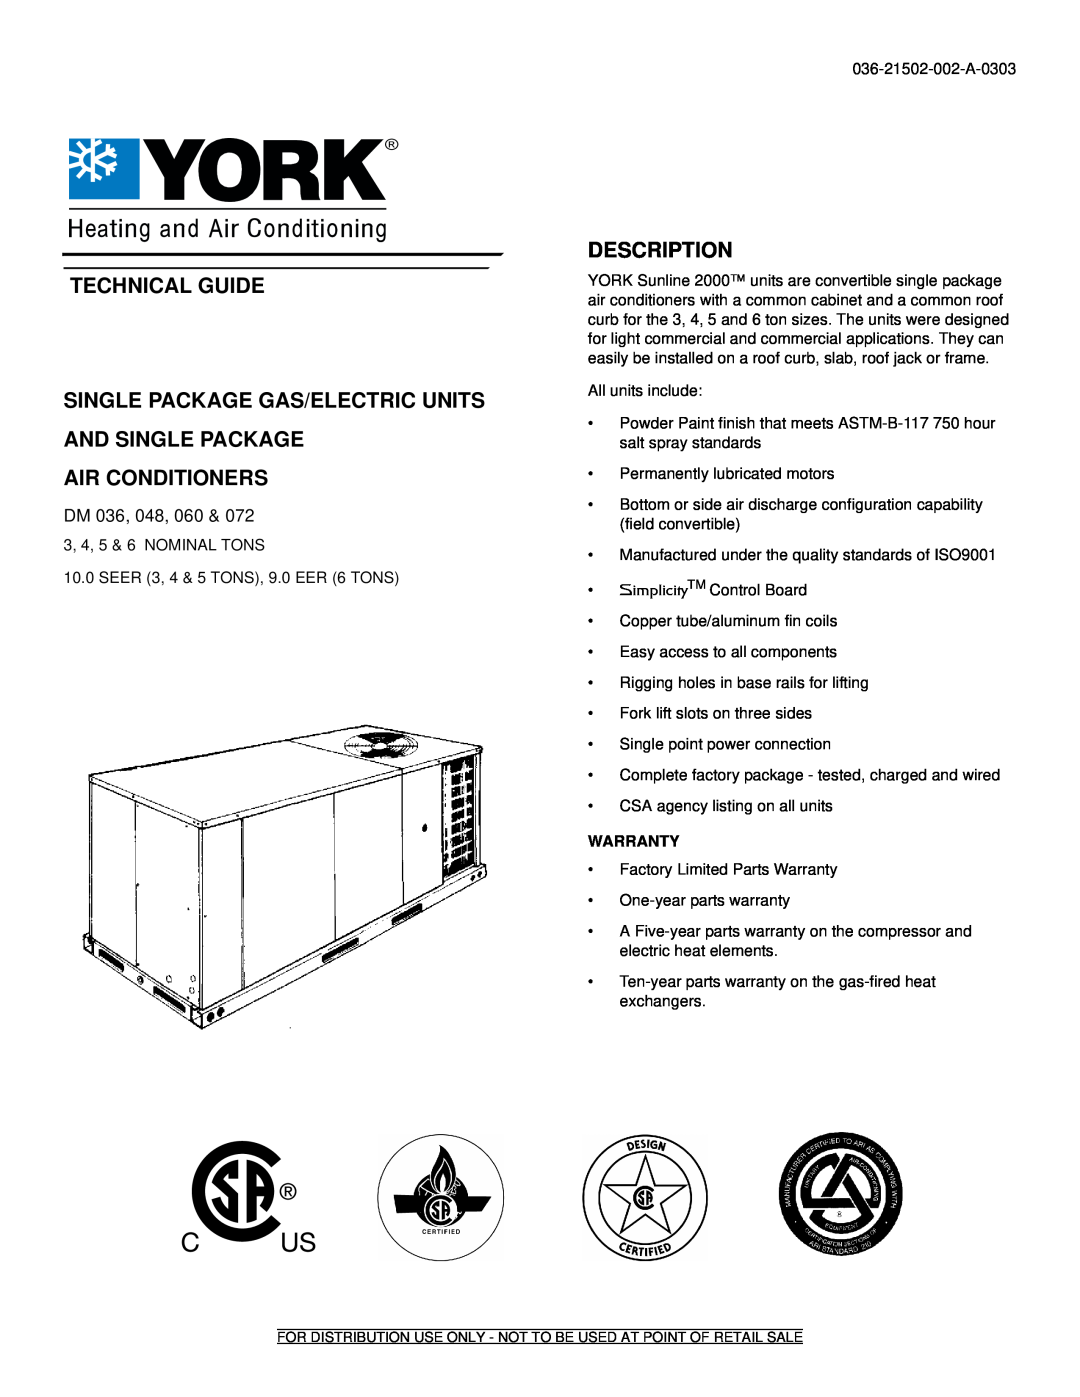 York DM 060, DM072, DM 048, DM 036 warranty Technical Guide, Air Conditioners, Description, Simplicity 